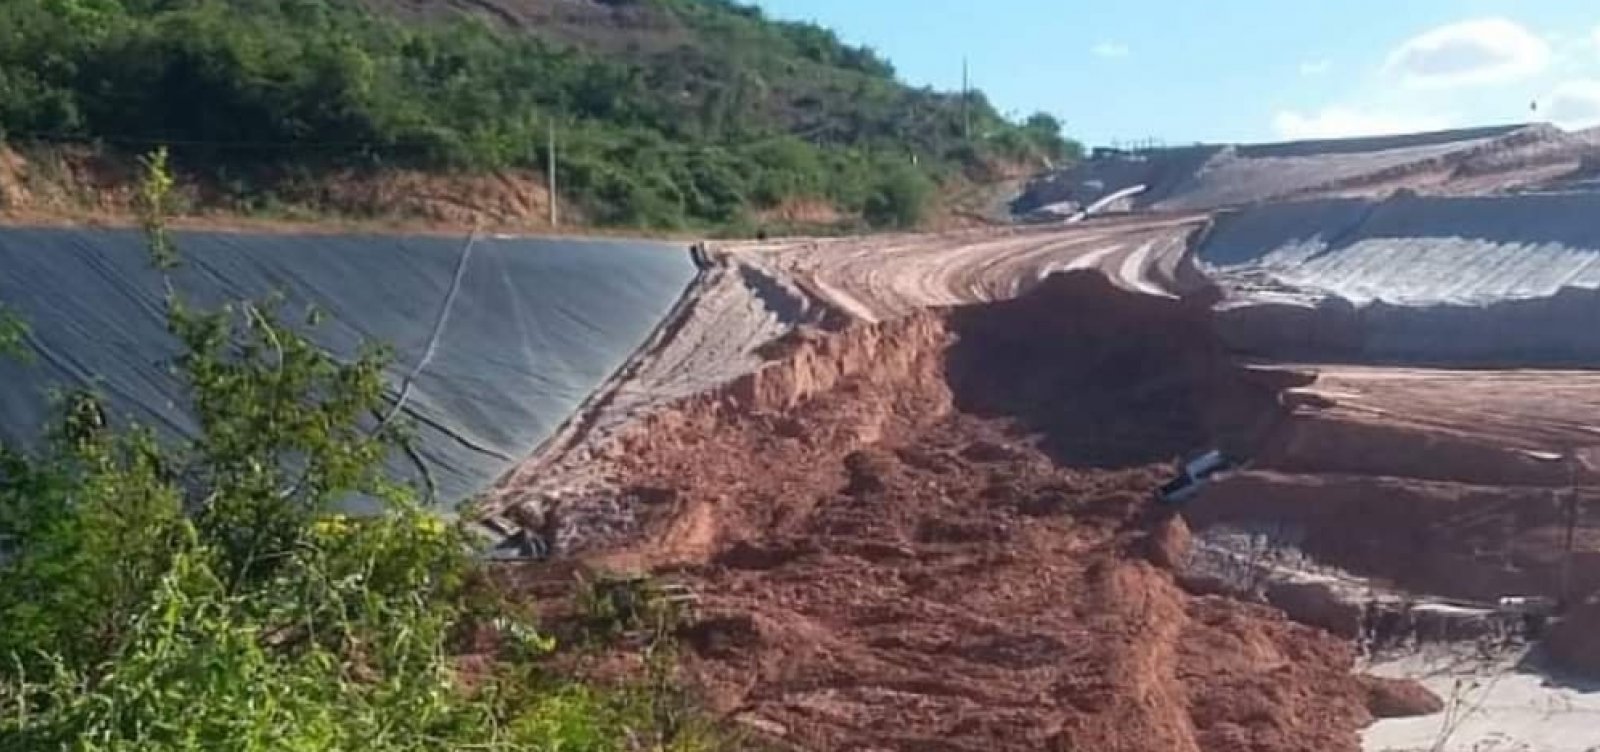 Deslizamento em área próxima à barragem de Jacobina assusta moradores; empresa diz que não há perigo